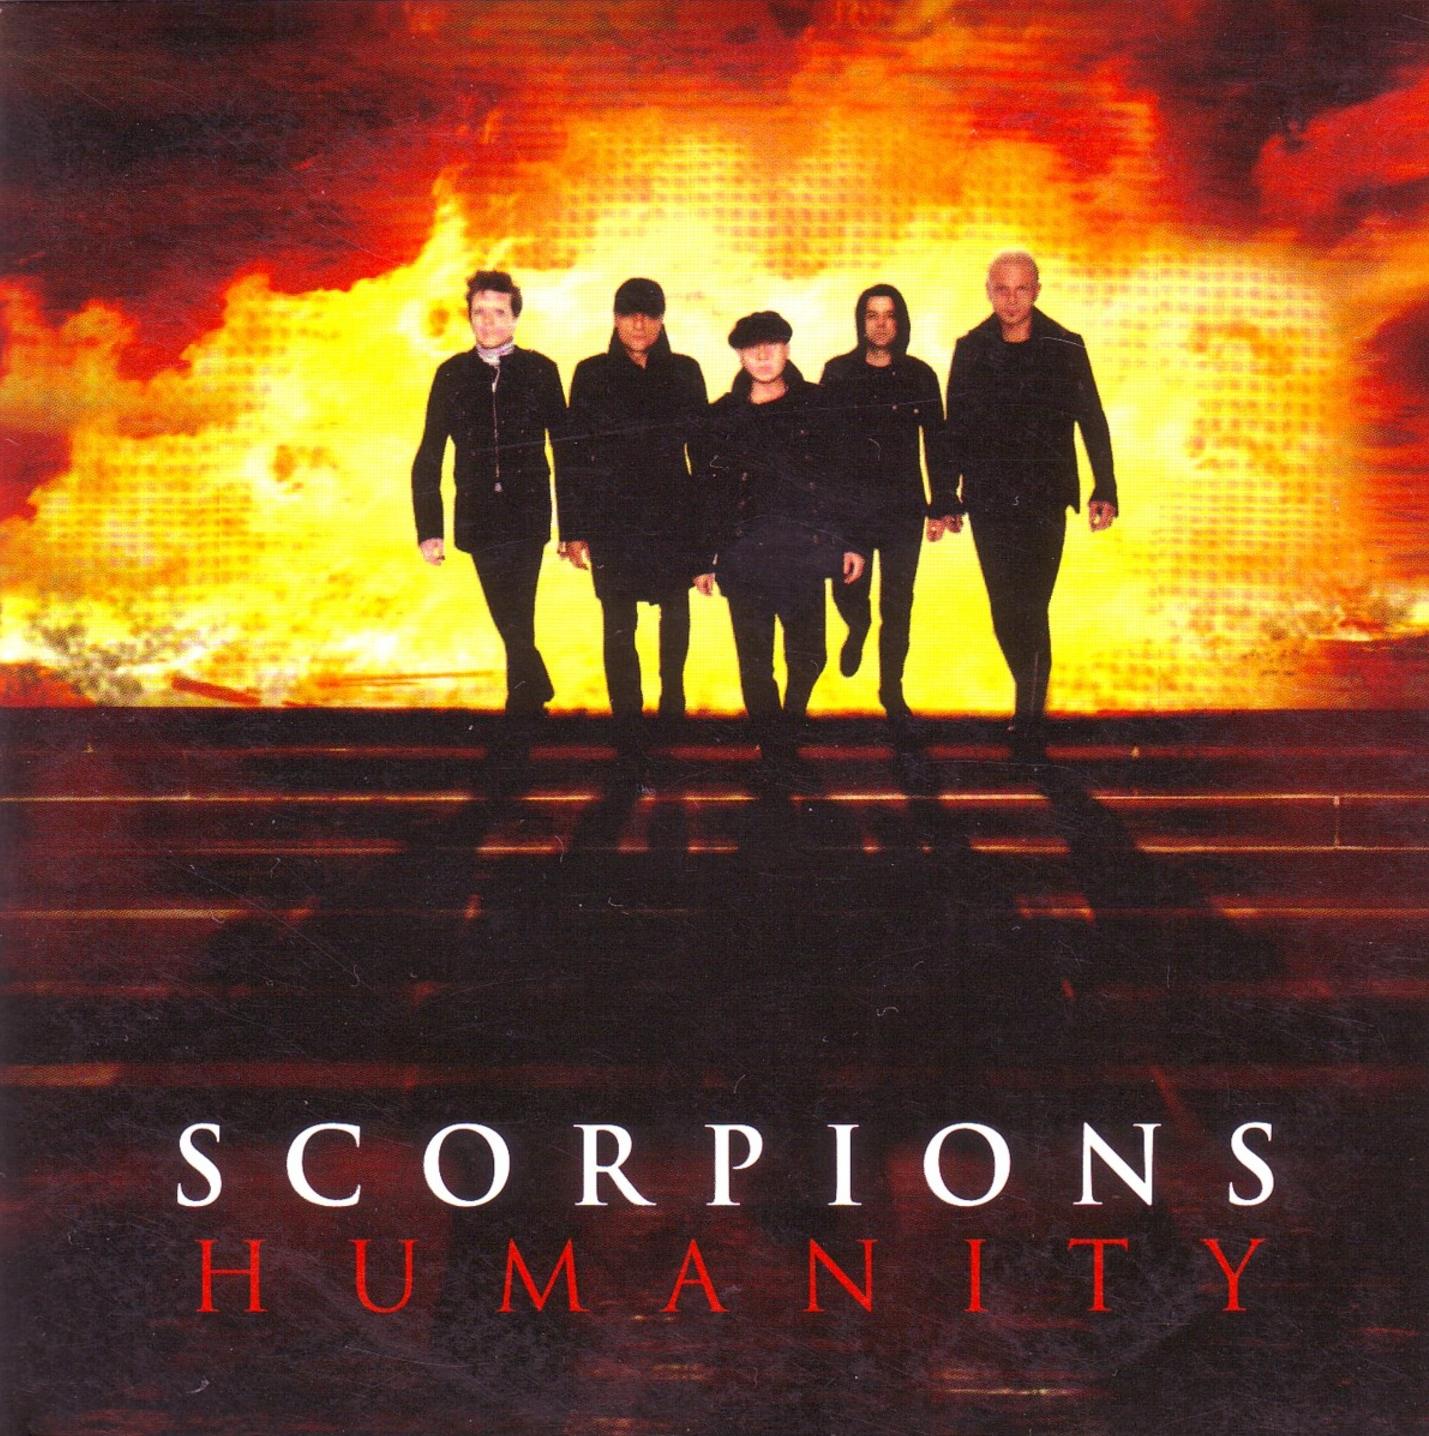 Scorpions humanity скачать бесплатно mp3